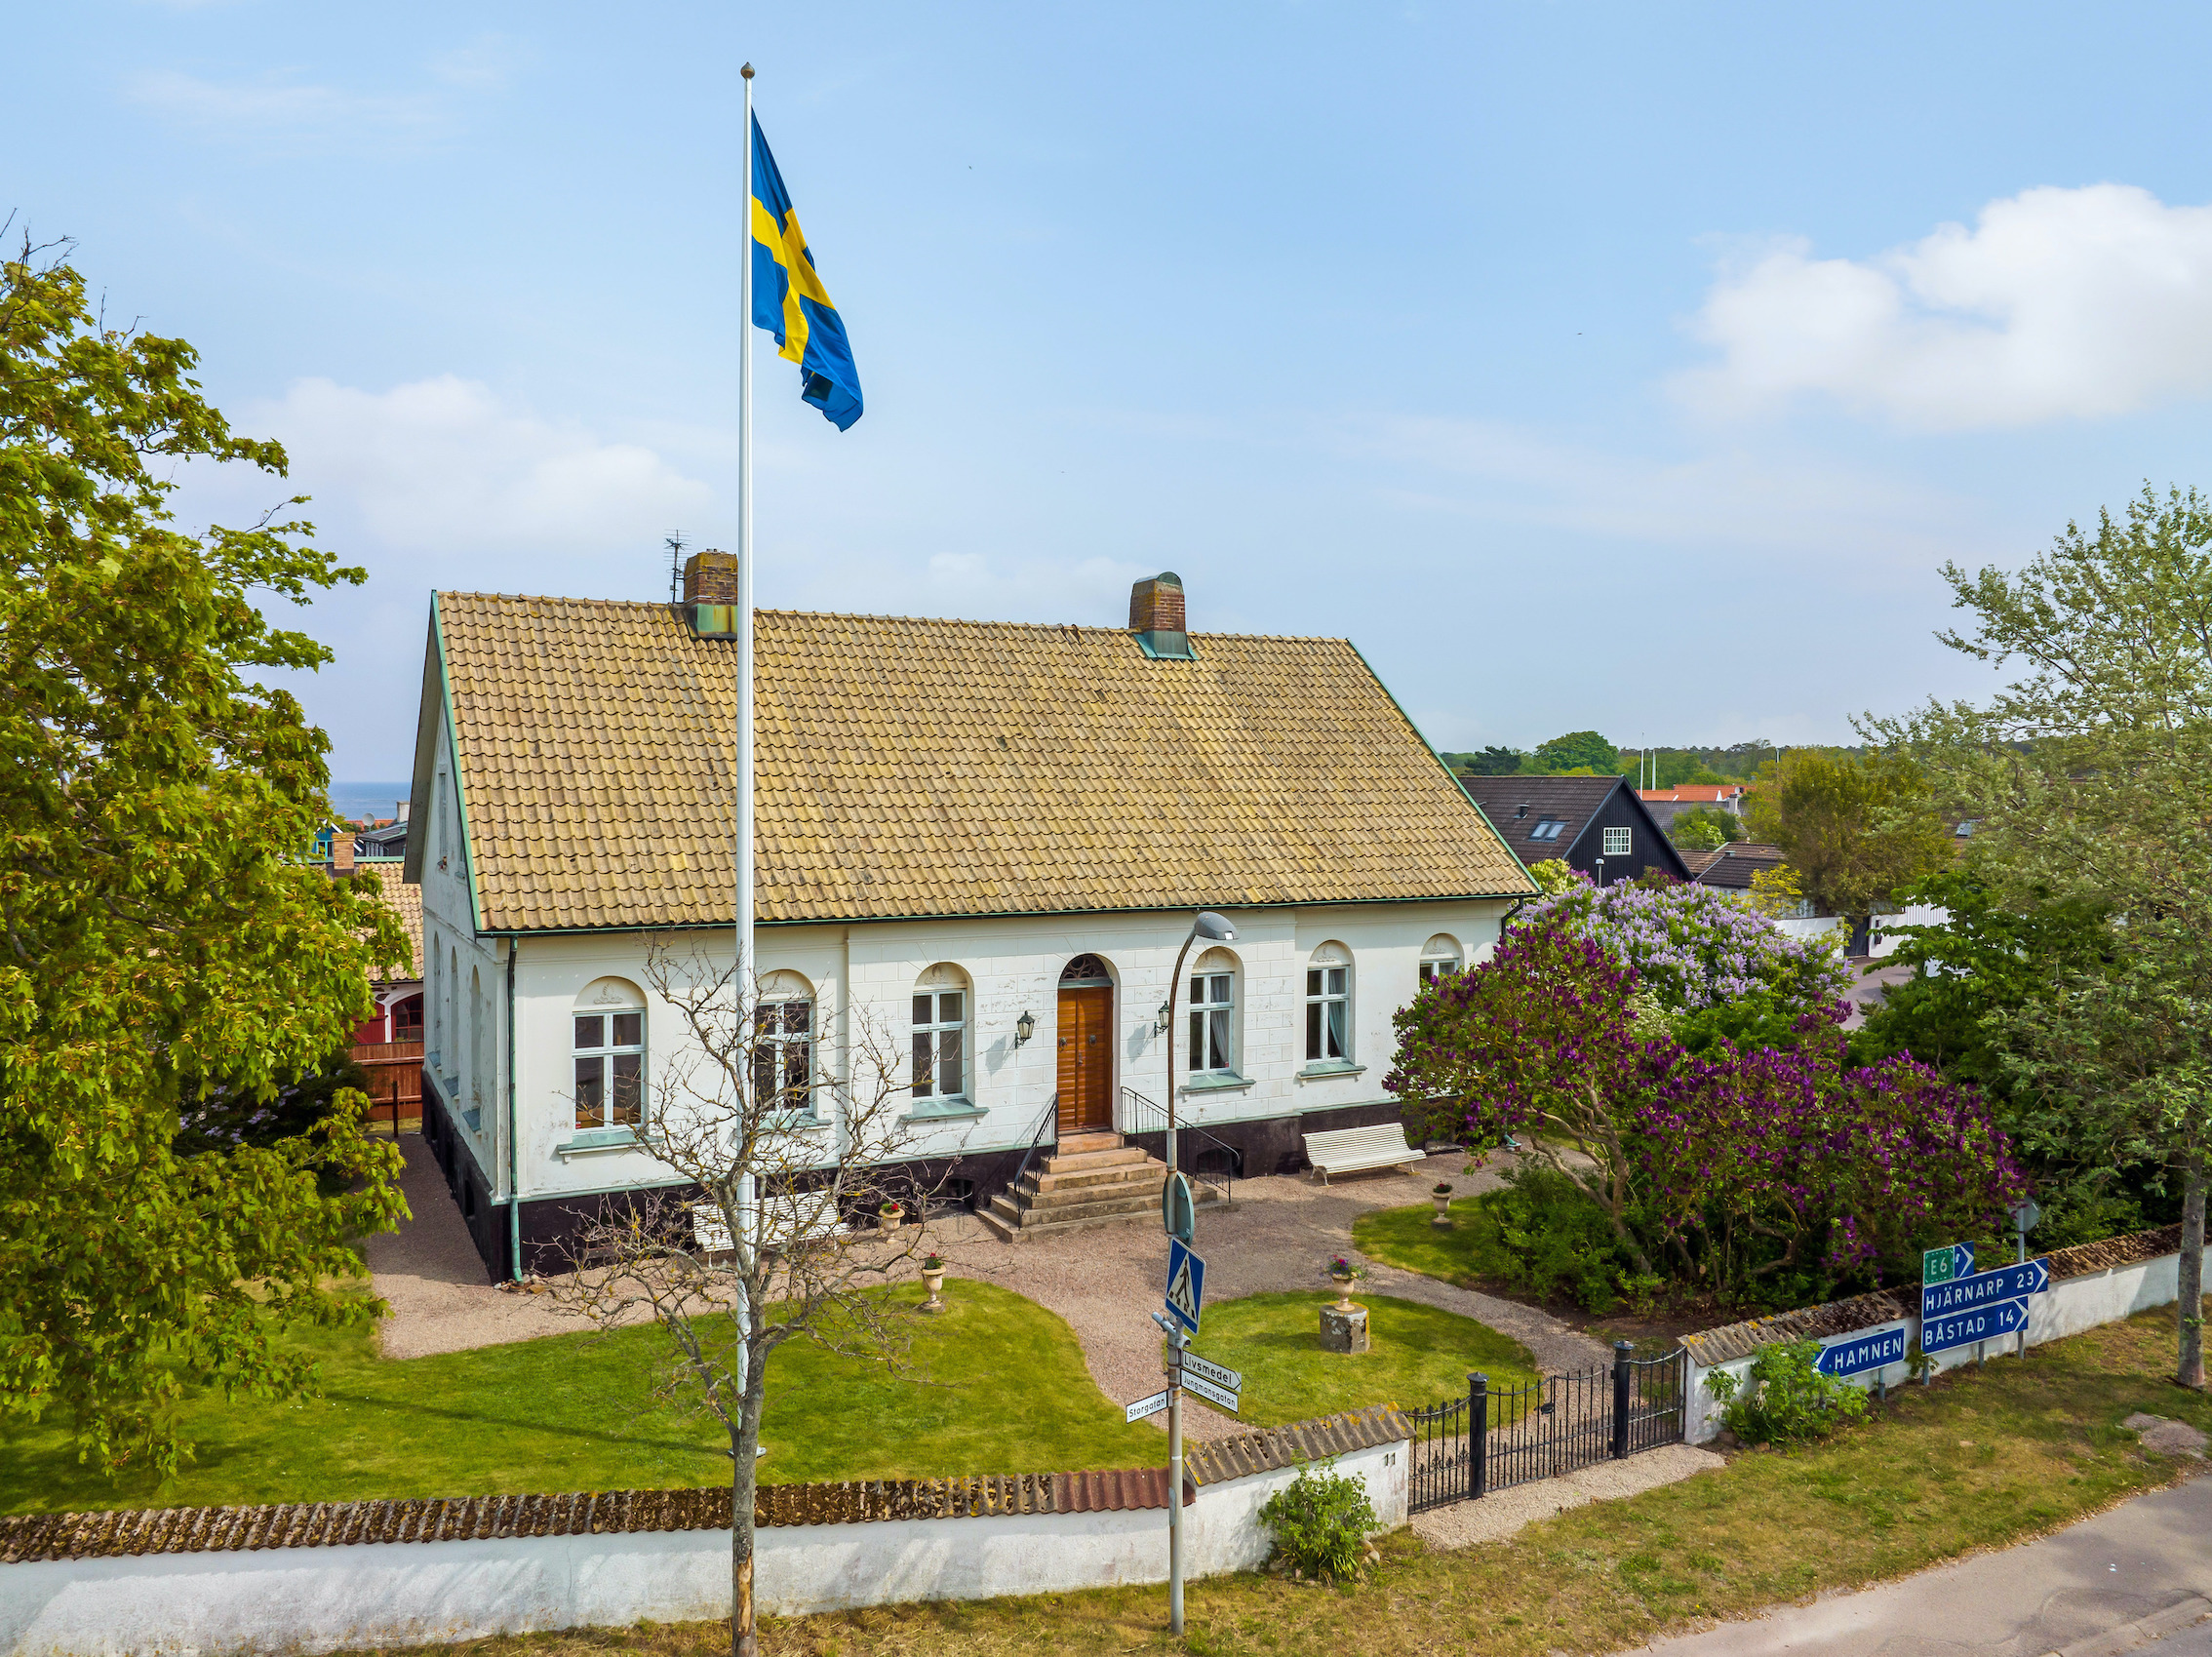 Exklusiva drömboenden från hela Sverige, du hittar exklusiva villor, exklusiva våningar och exklusiva gårdar i det digitala Galleriet. I mäklarguiden hittar du utvalda fastighetsmäklare. Om du söker en exklusiv bostad eller mäklare så hittar du dem i vår guide.